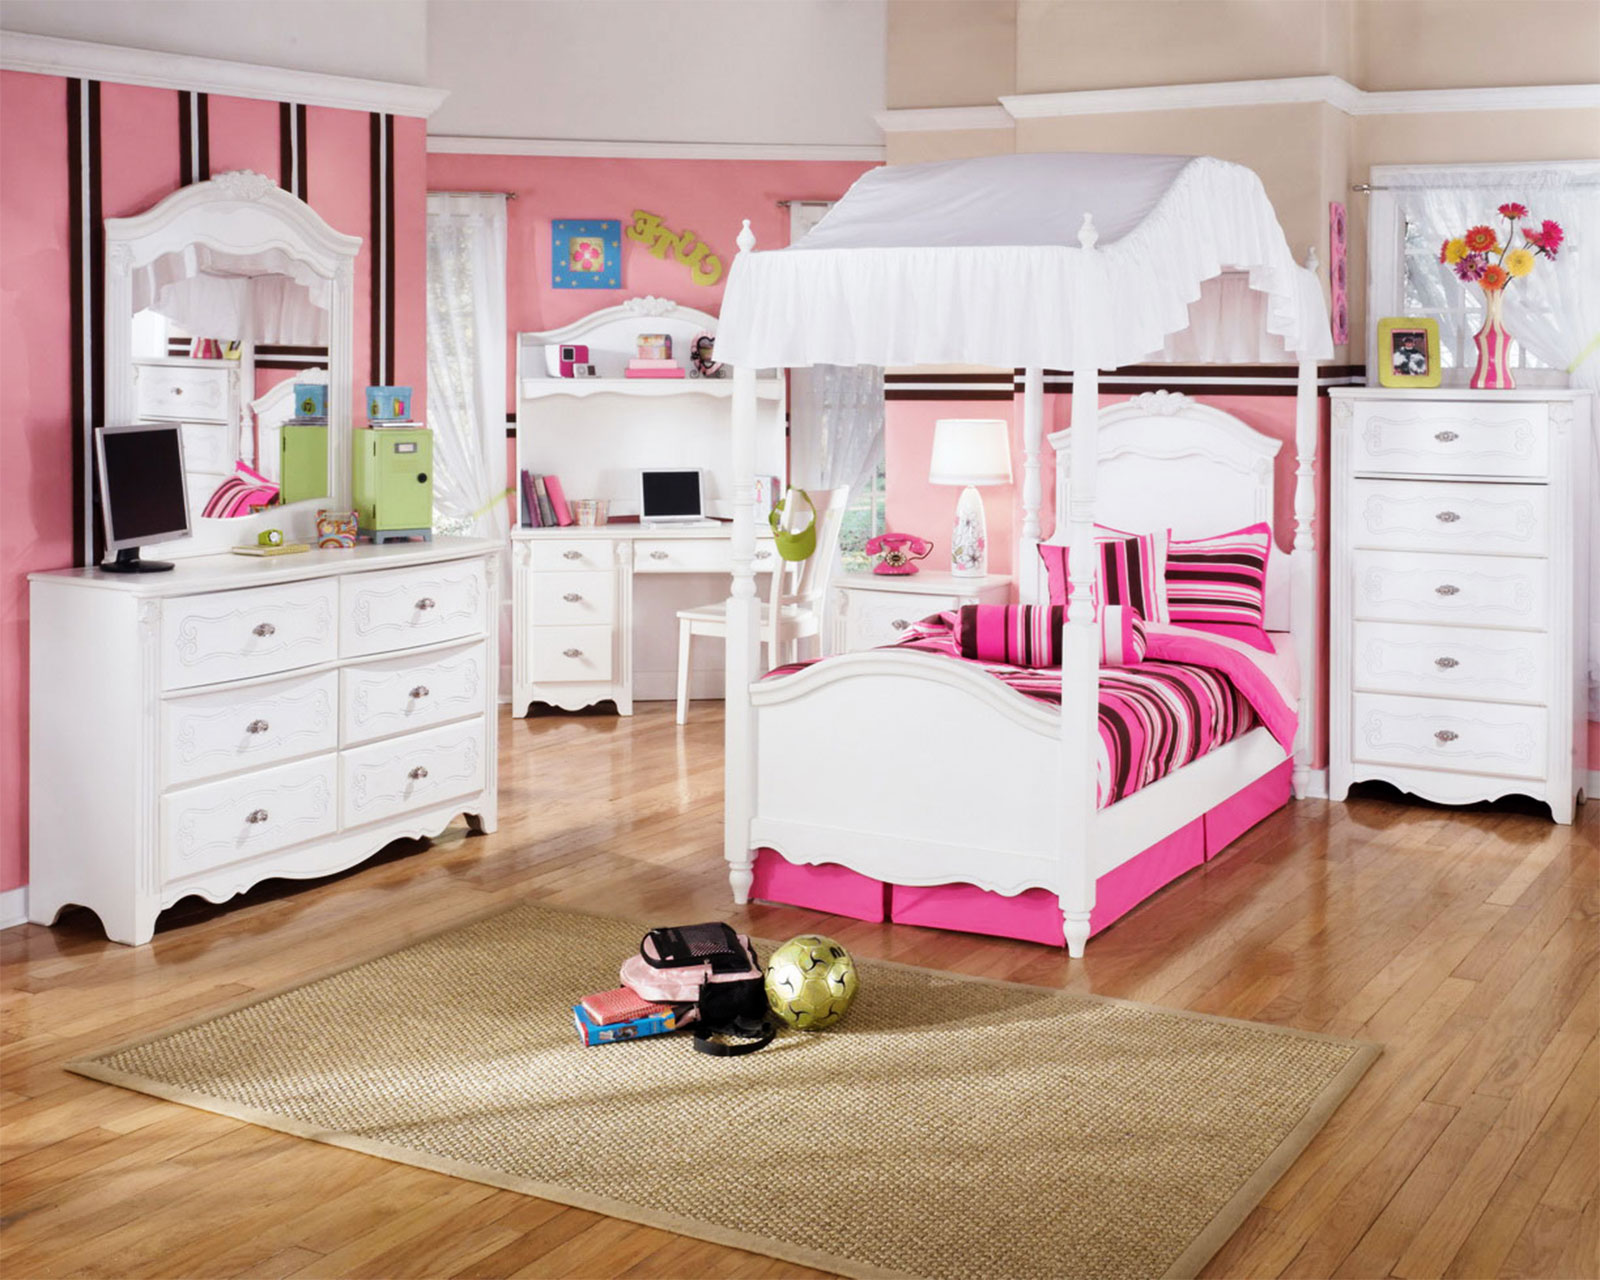 young children's bedroom furniture